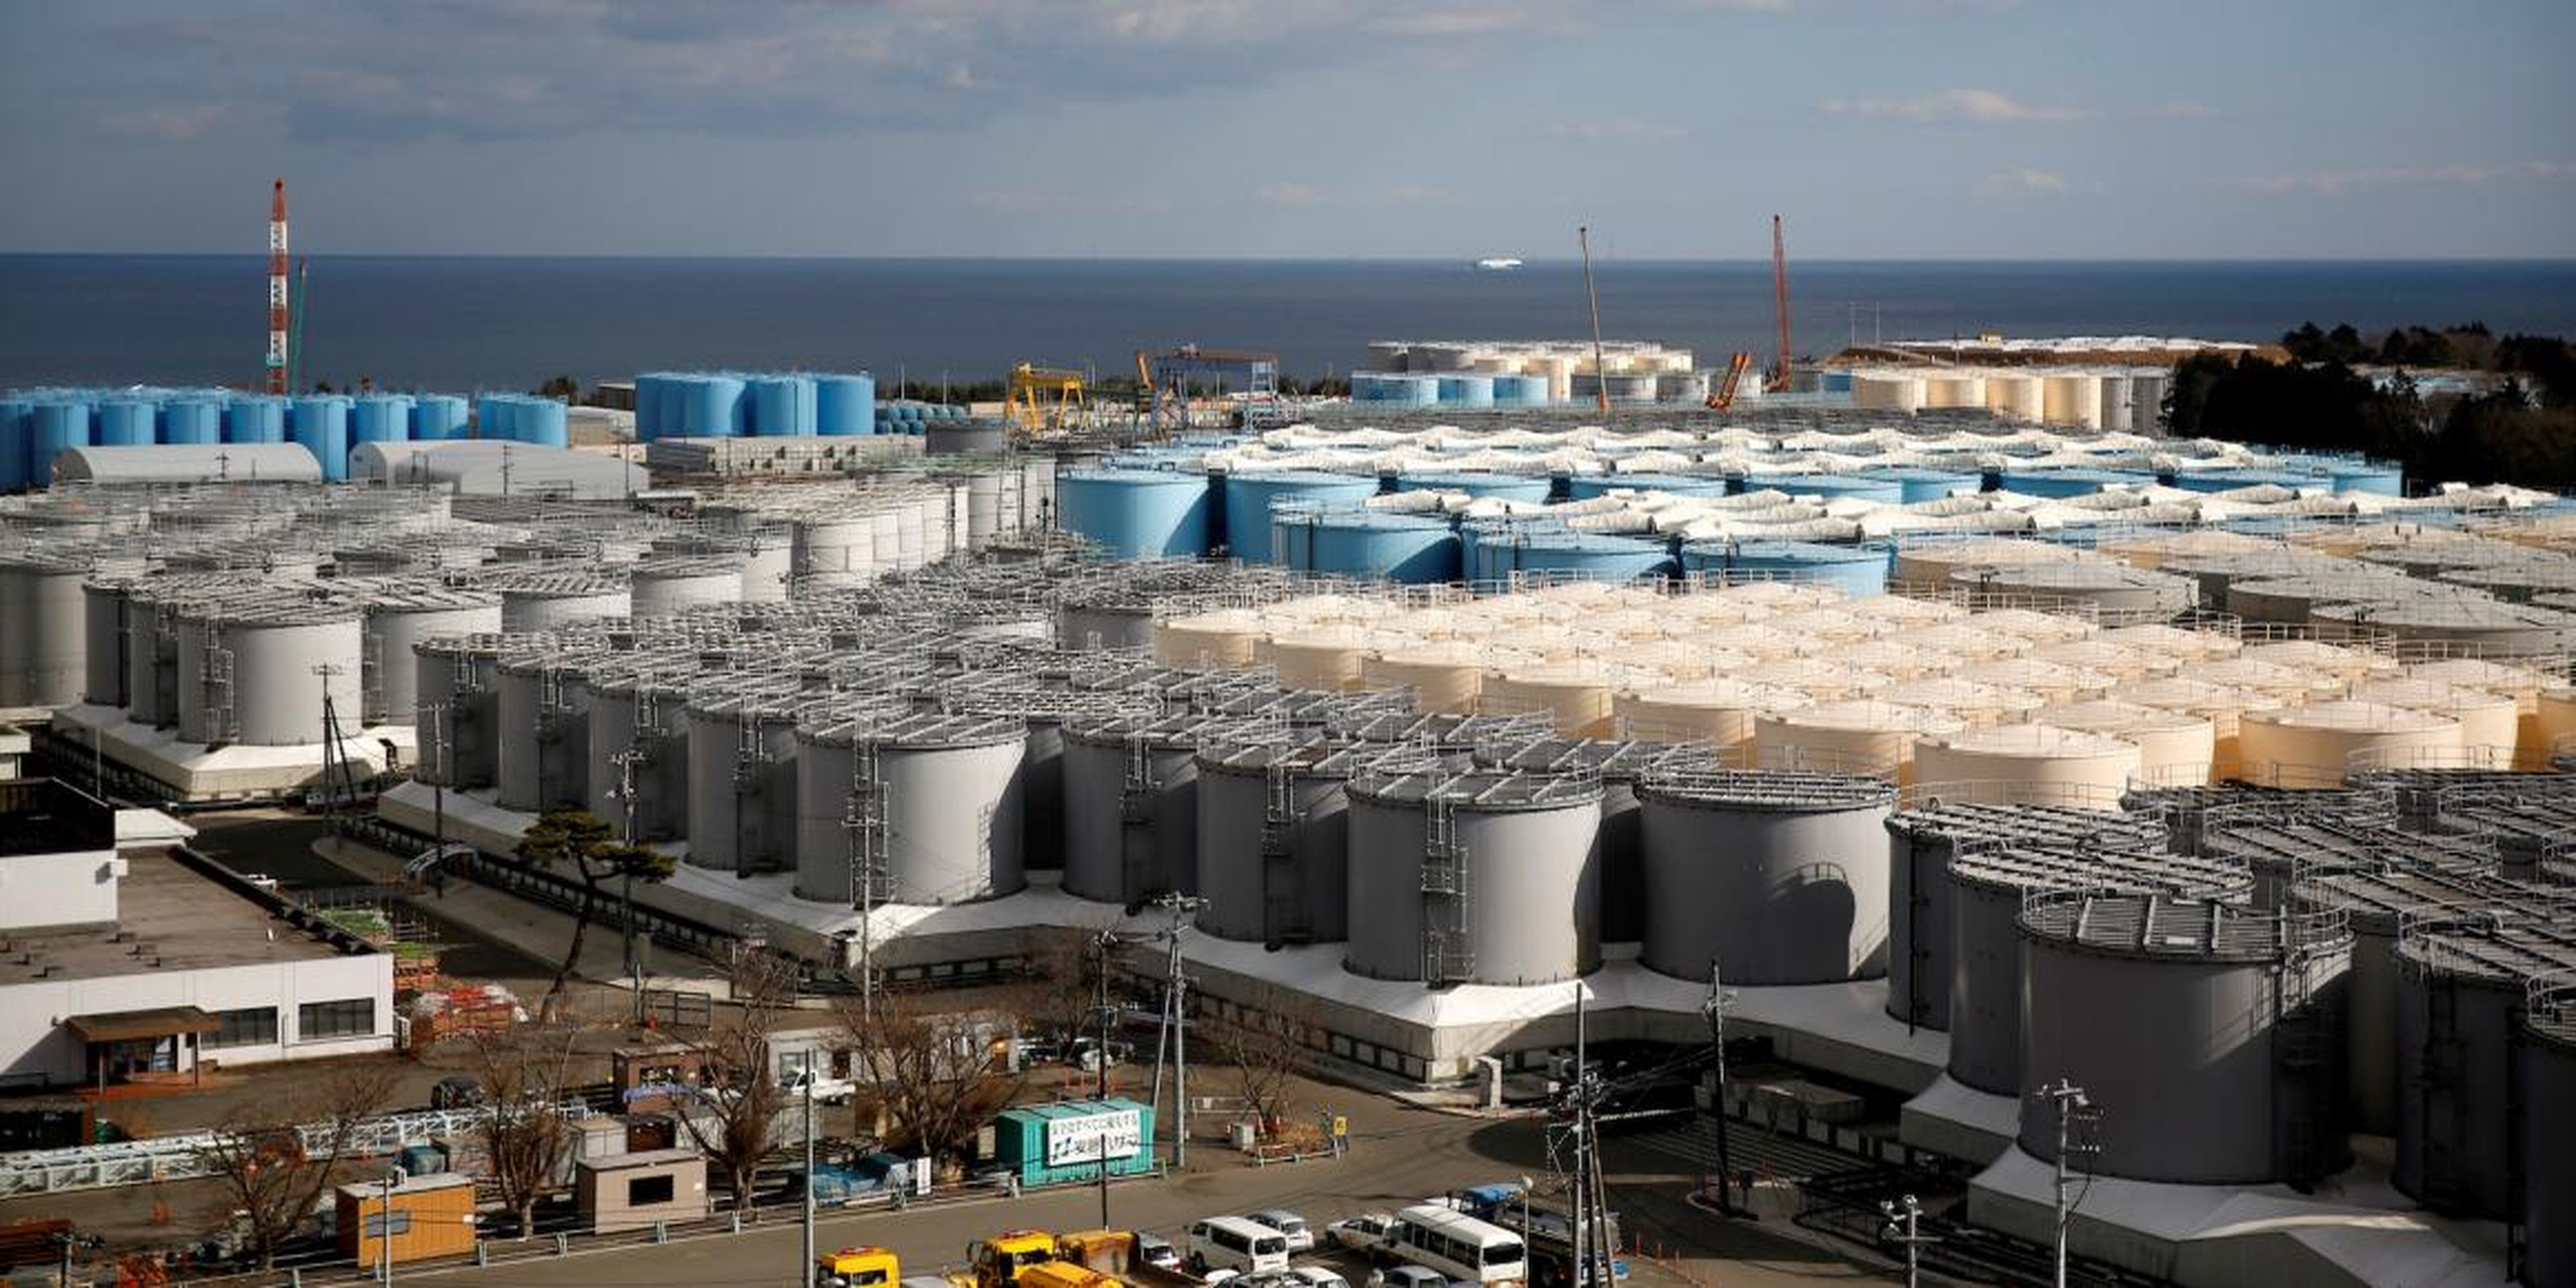 Tanques de almacenamiento de agua radiactiva son vistos en la planta de energía nuclear de Fukushima Daiichi, en la ciudad de Okuma, prefectura de Fukushima, Japón, el 18 de febrero de 2019.